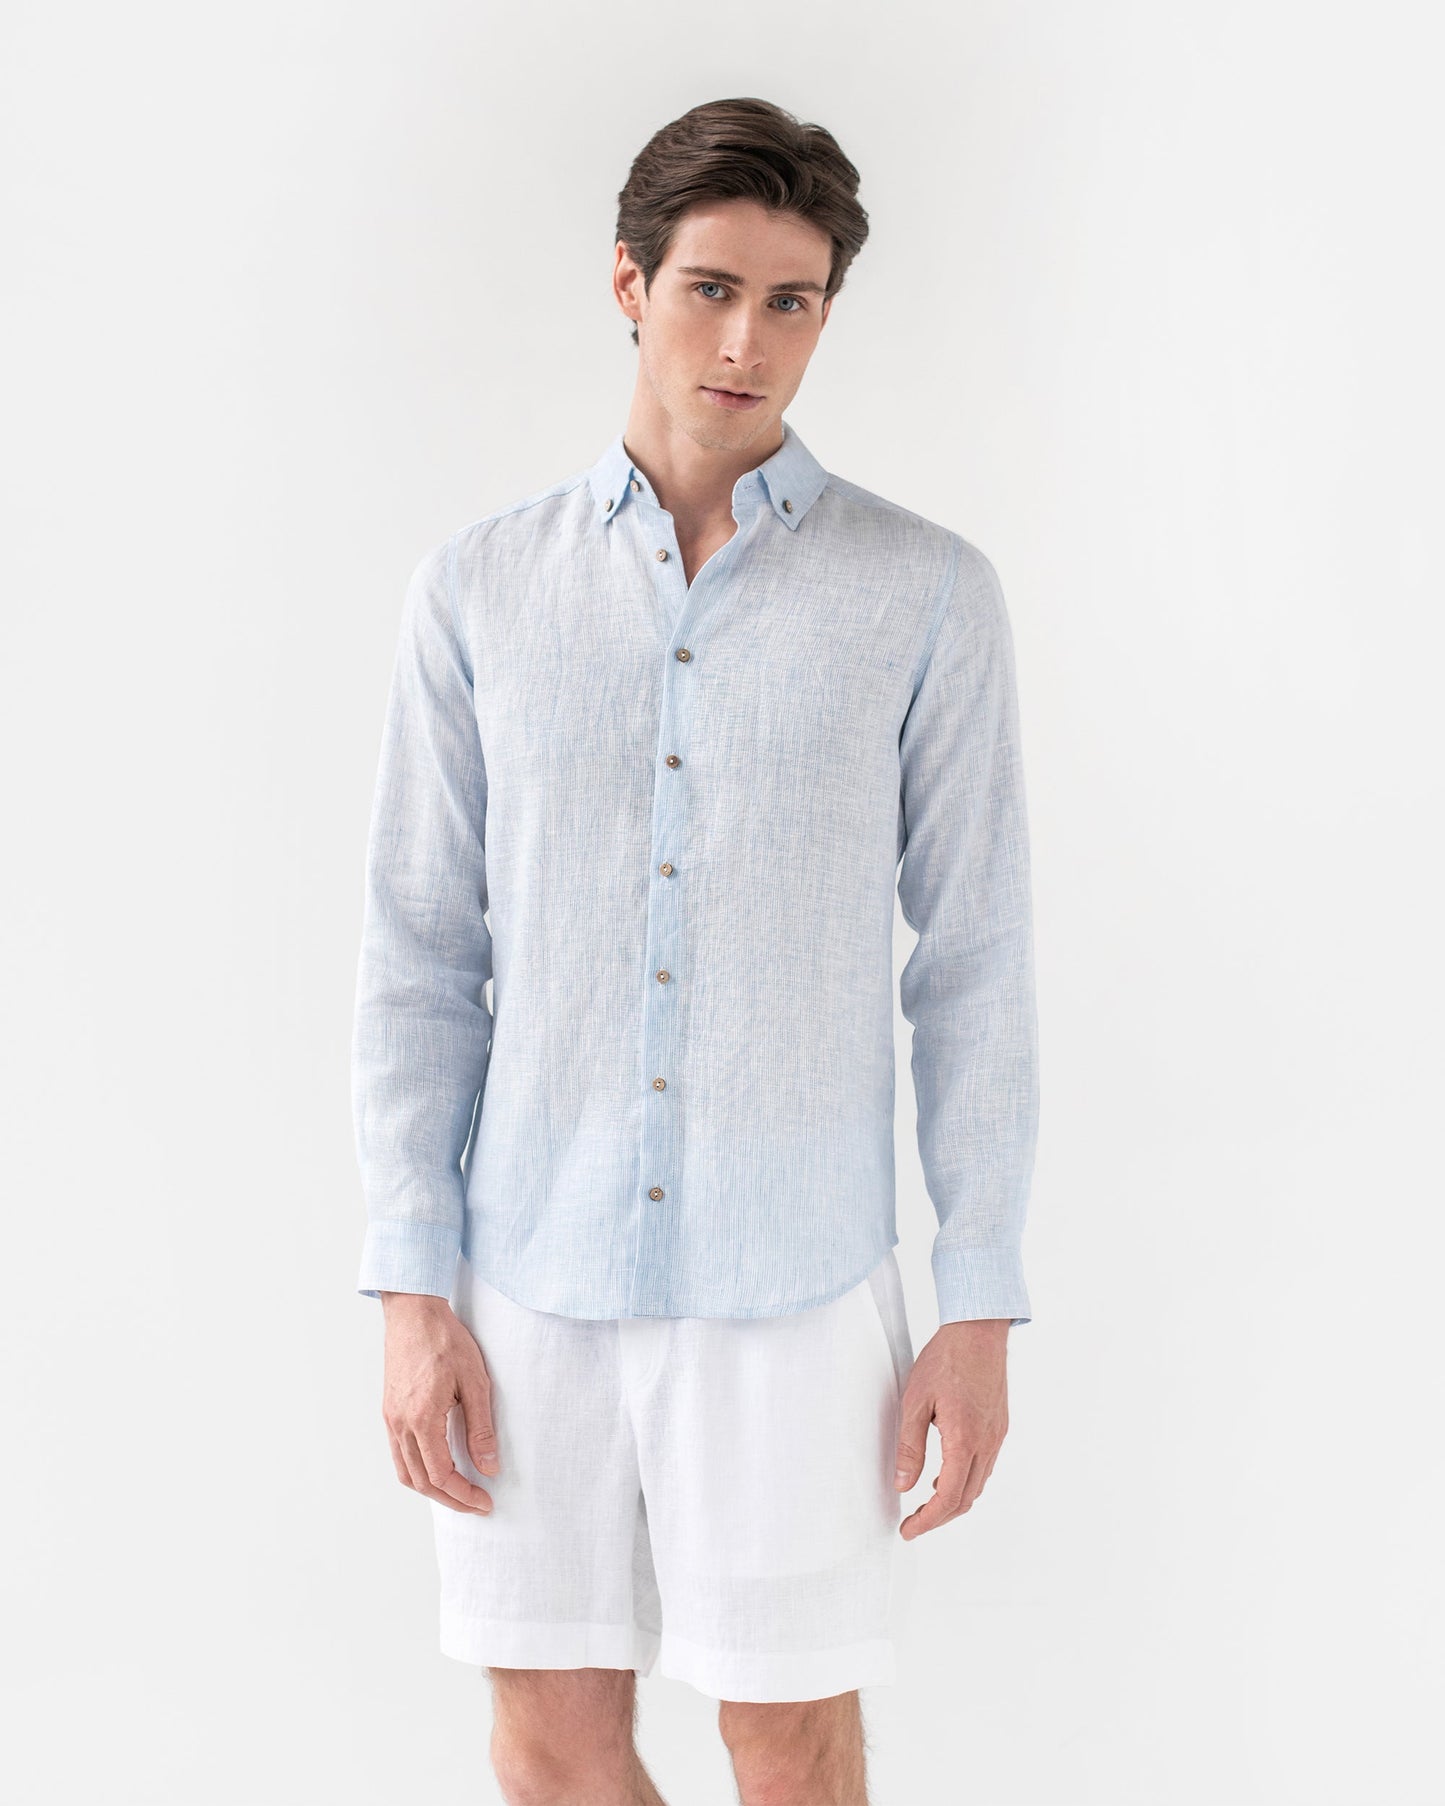 Men's linen shirt NEVADA in Pinstripe Blue | MagicLinen